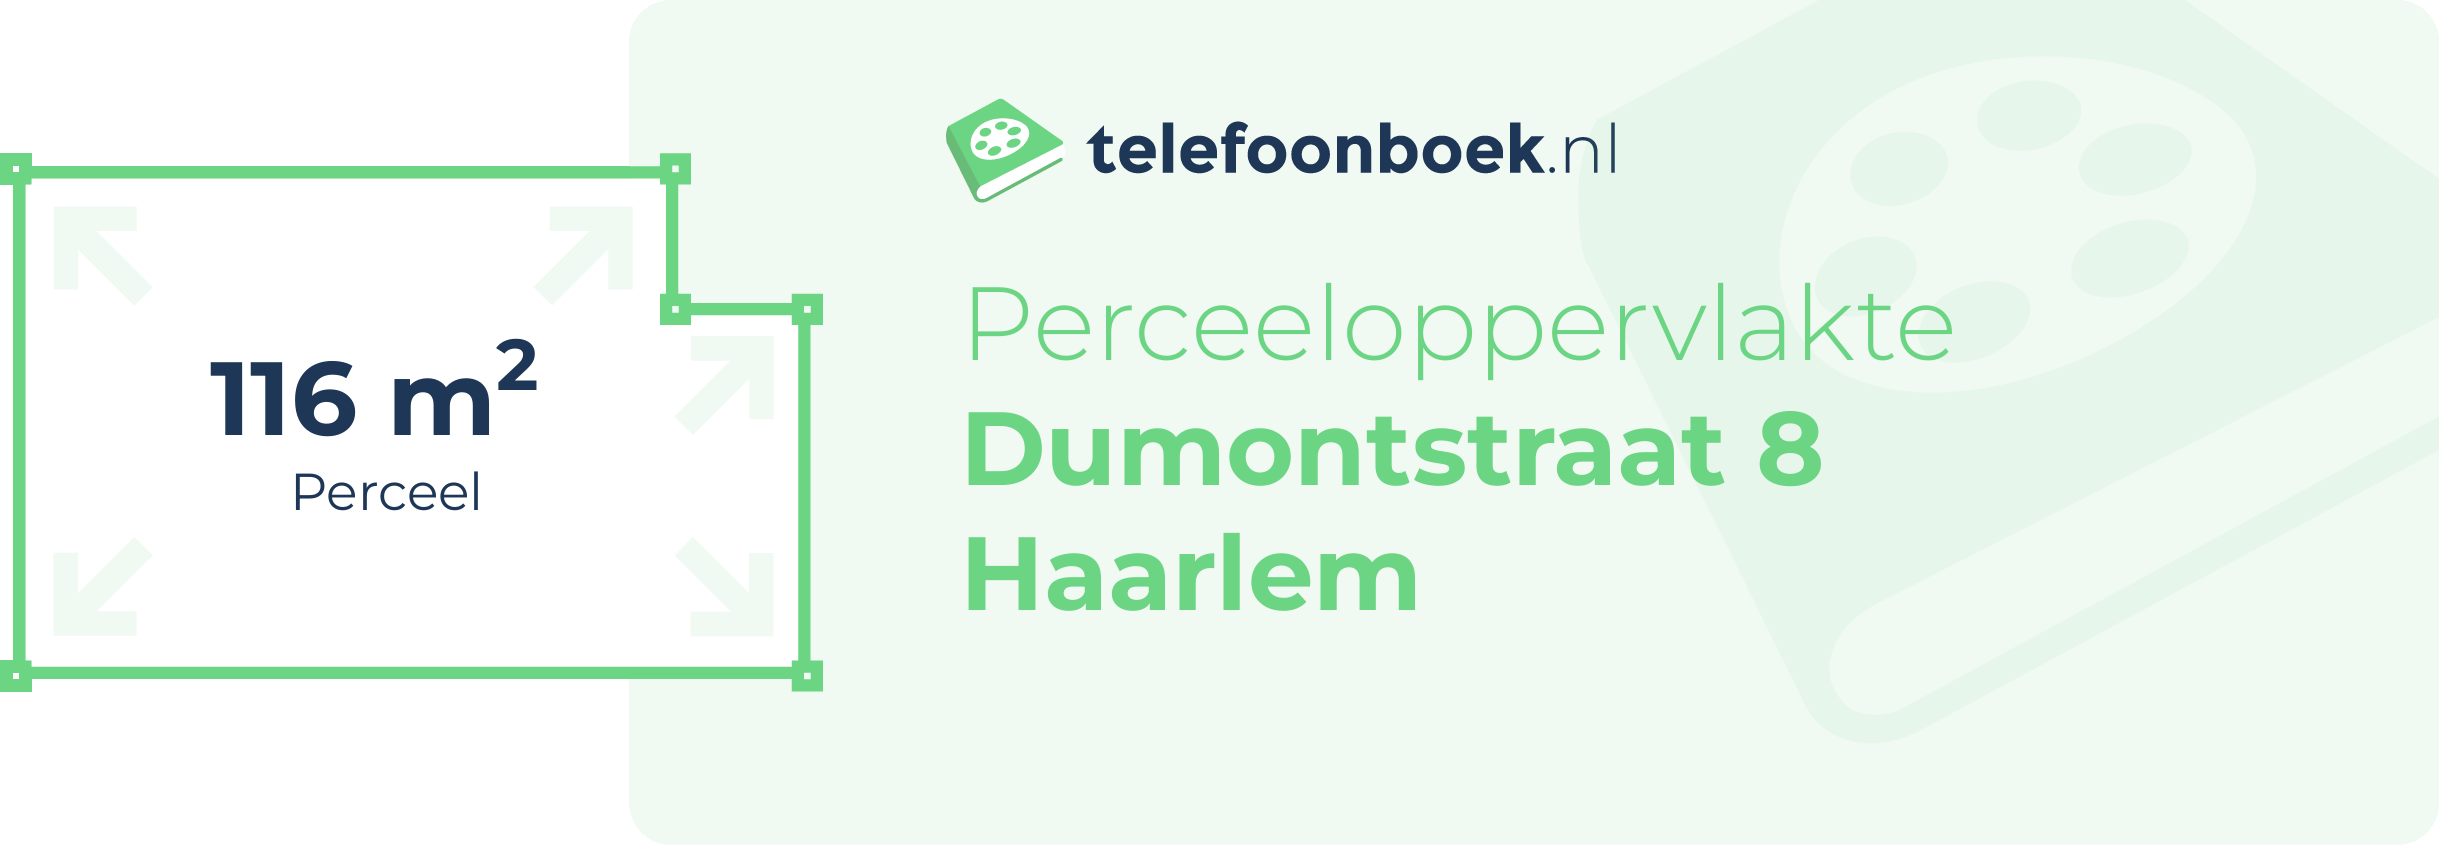 Perceeloppervlakte Dumontstraat 8 Haarlem